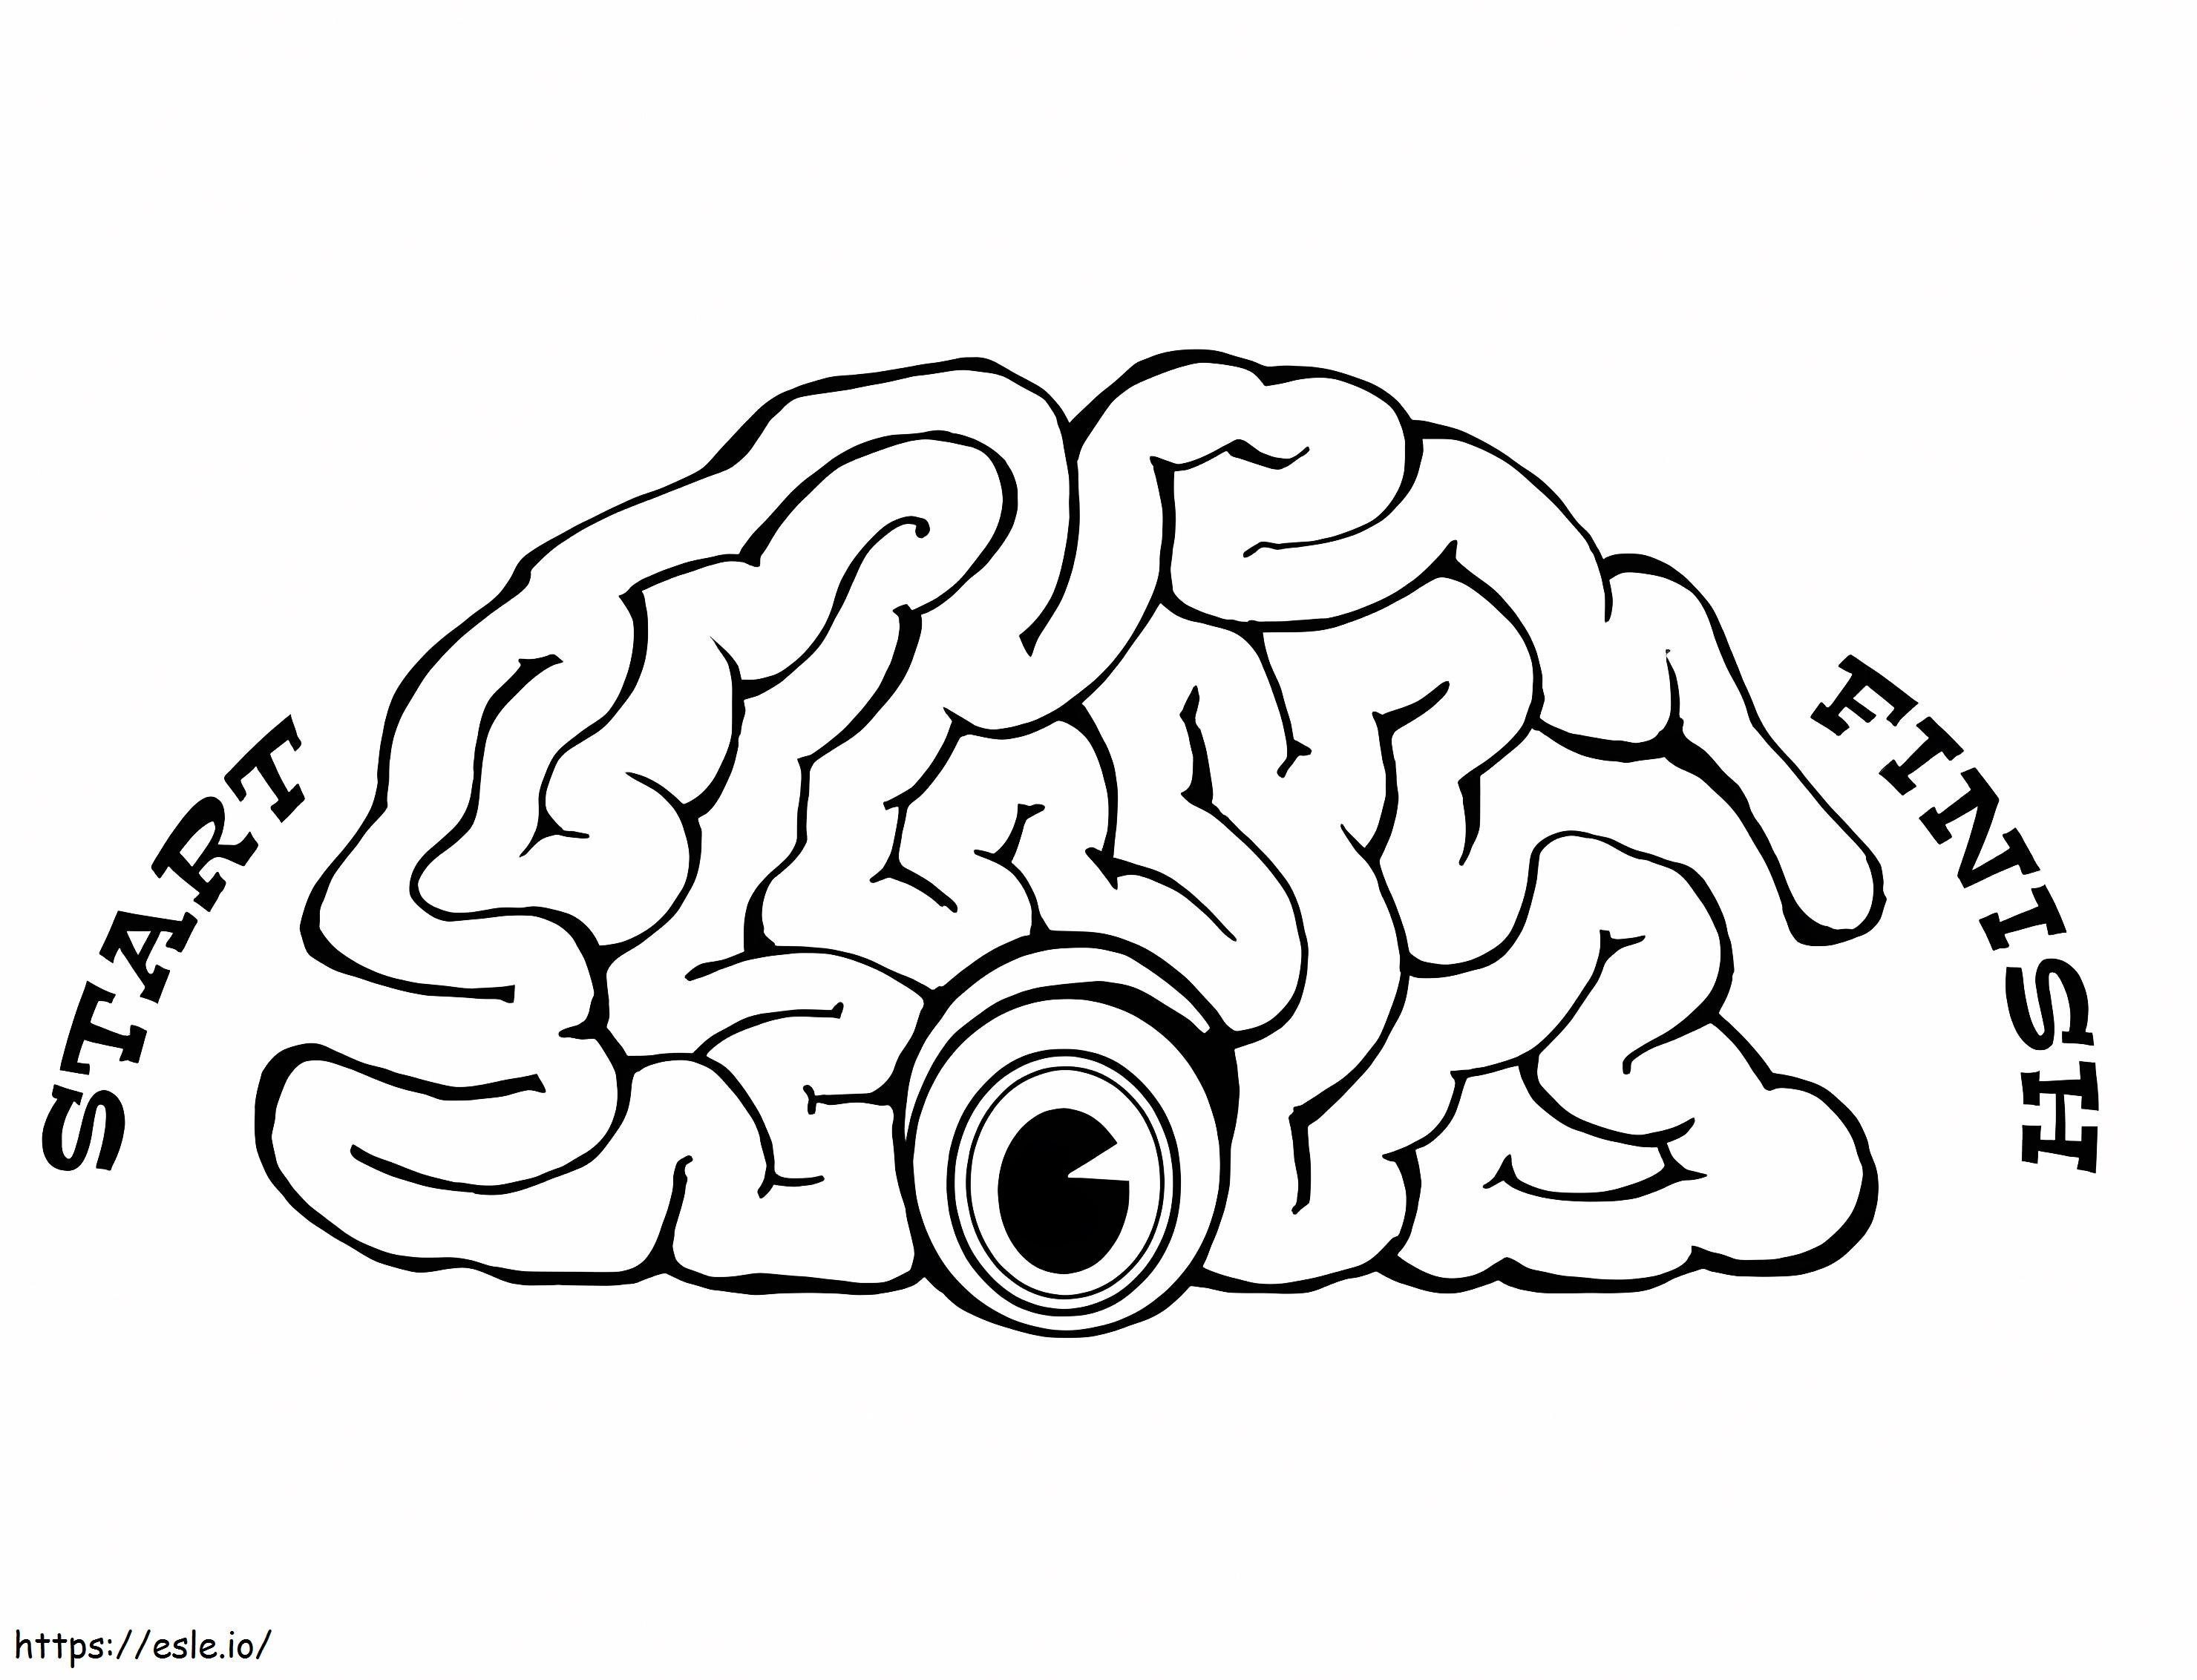 Spiel menschliches Gehirn ausmalbilder